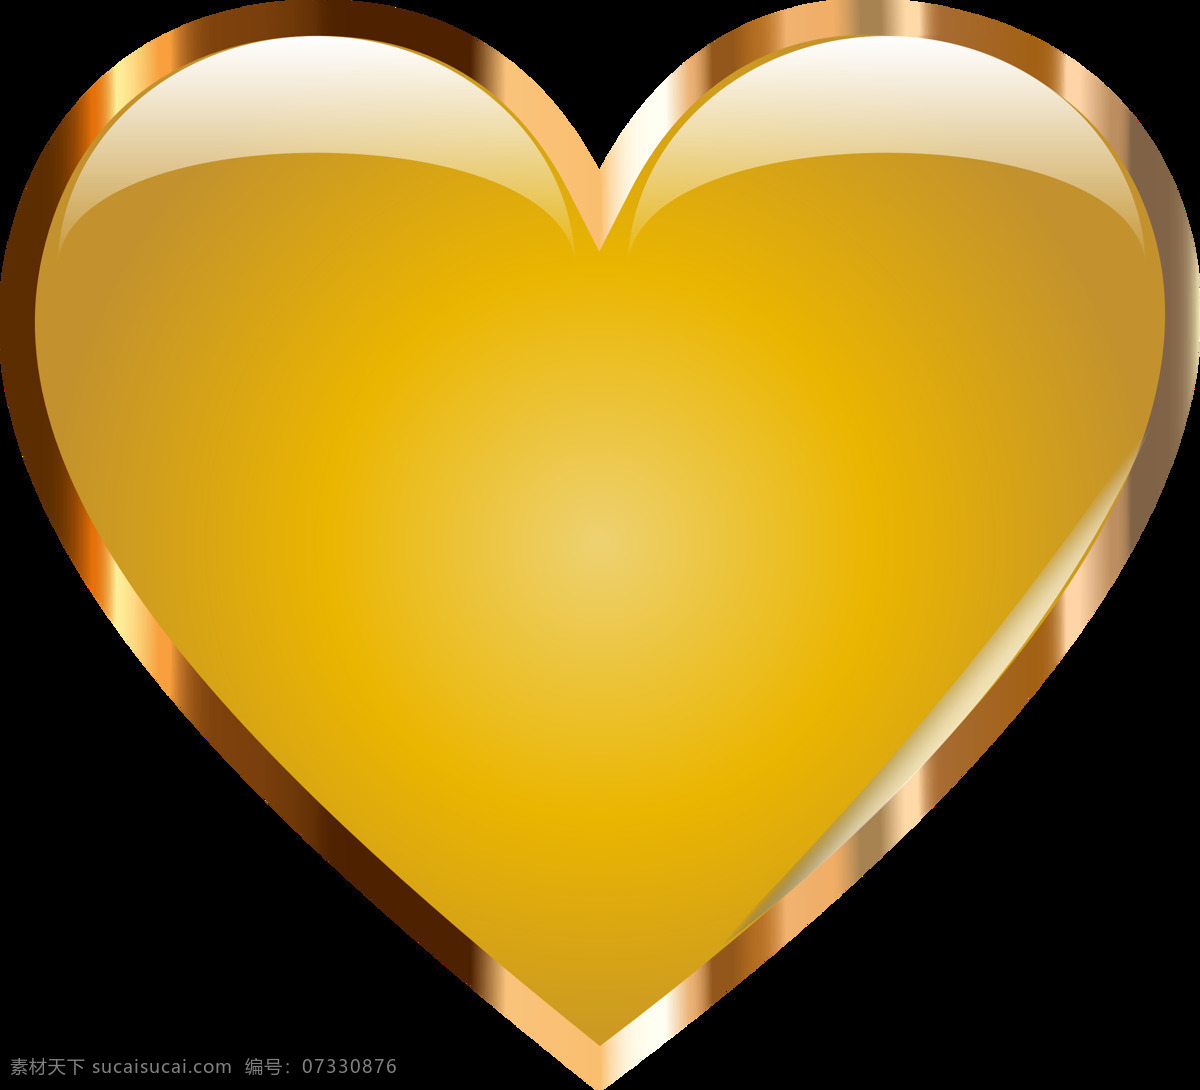 金色 心形 图形 免 抠 透明 金色心素材 一颗金心 情人节元素 心形图片 浪漫元素 黄心图片 黄心图片素材 心形广告图片 心形海报 心形海报素材 爱情元素 爱心素材